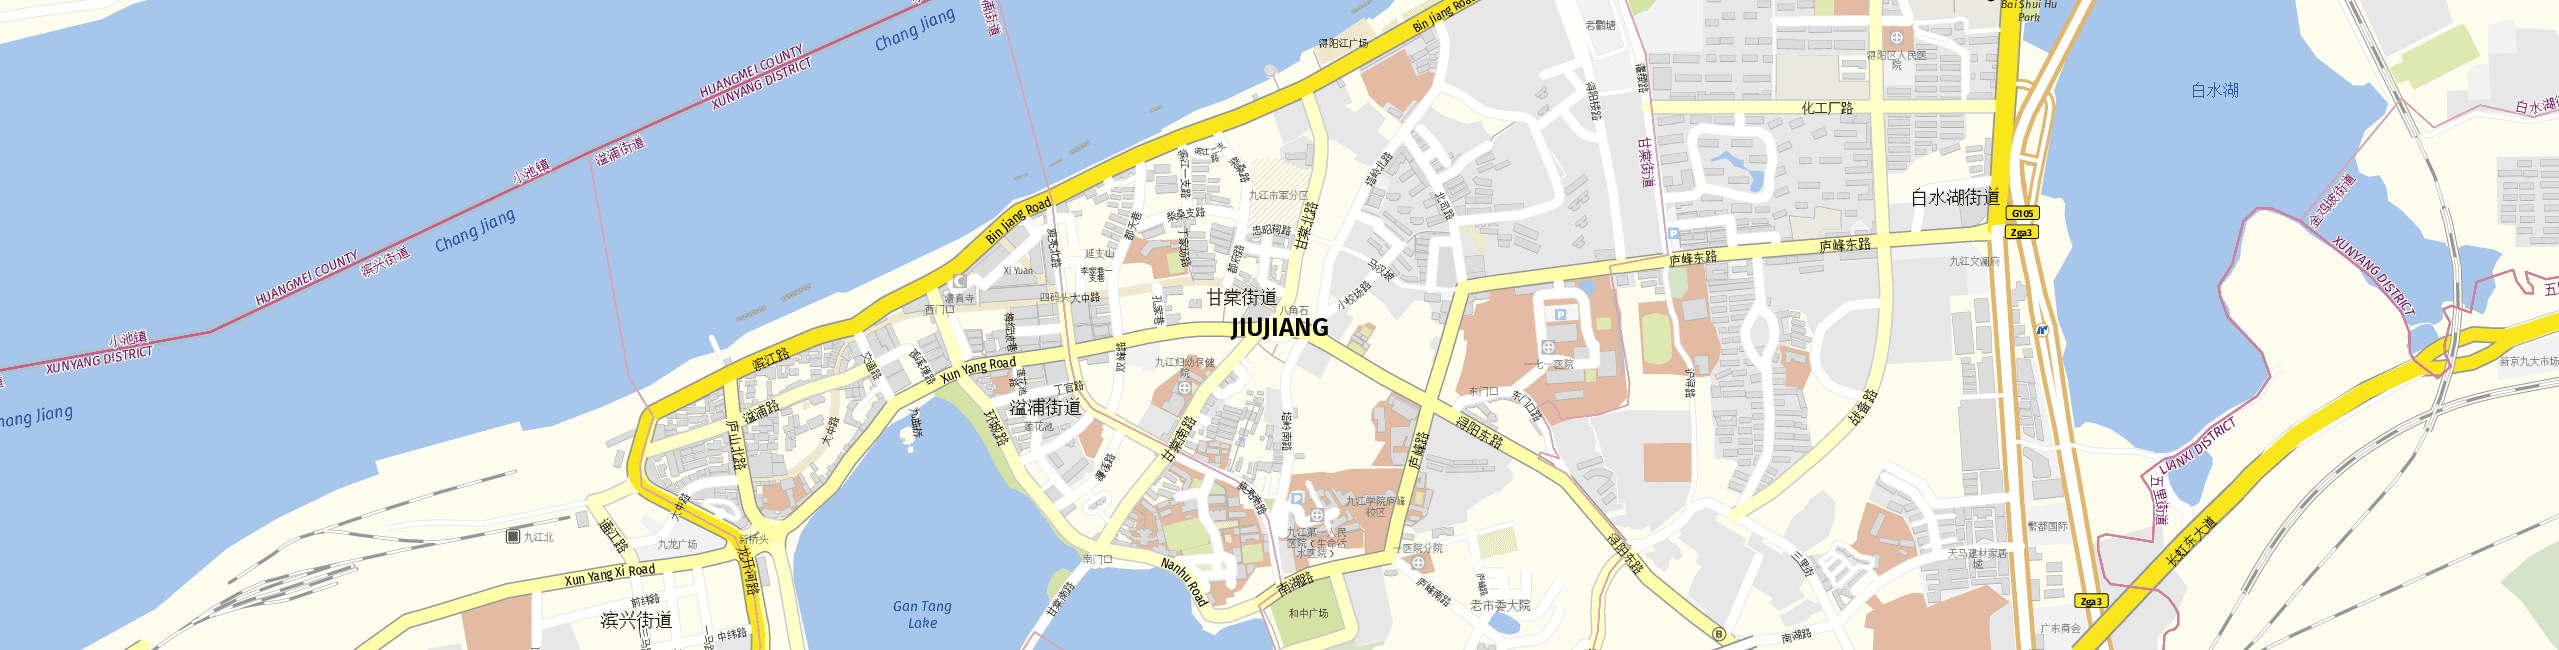 Stadtplan Jiujiang zum Downloaden.